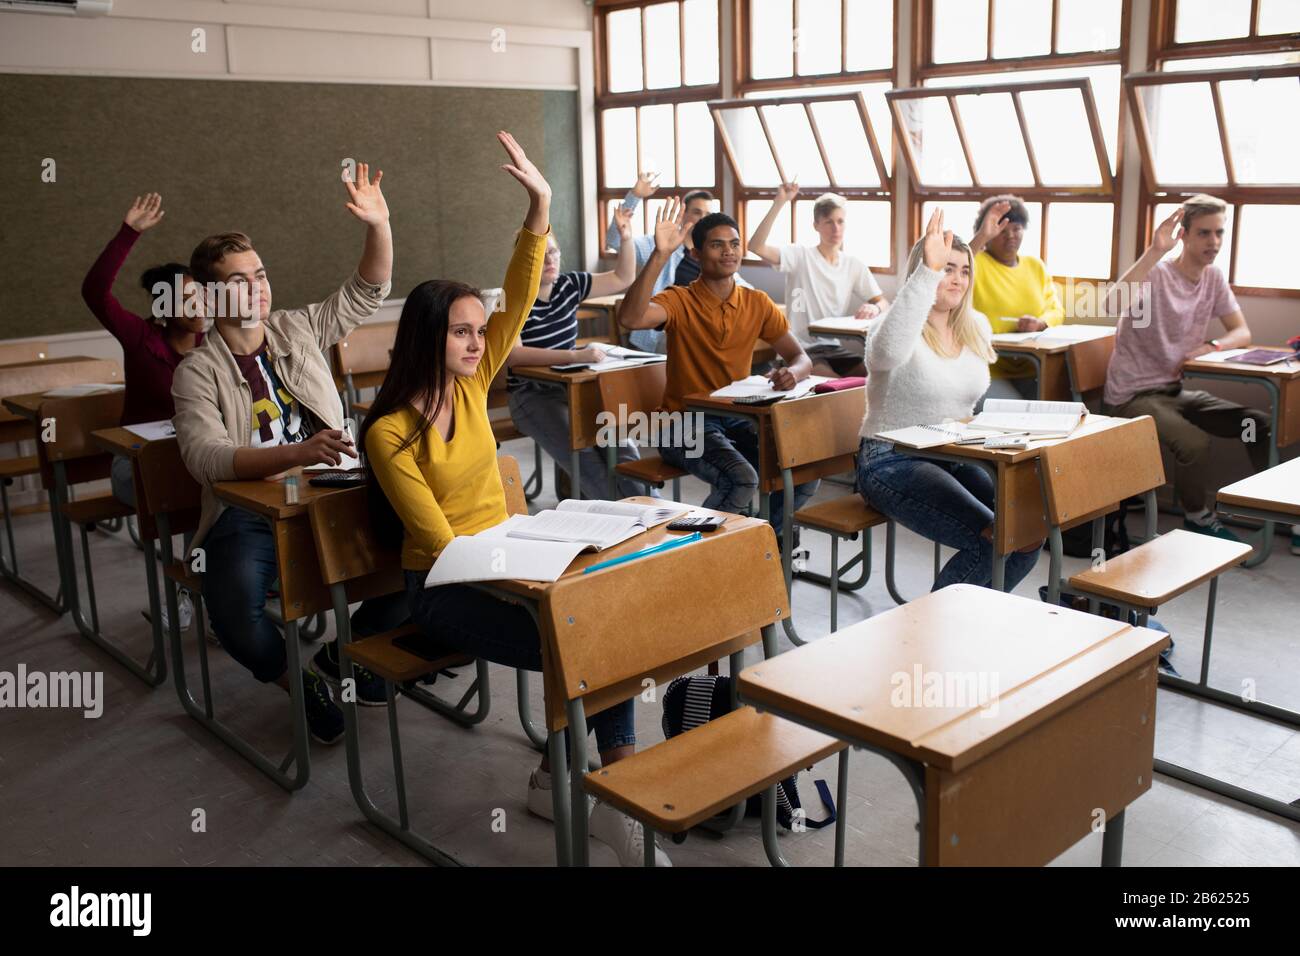 Vue latérale des élèves levant les mains en classe Banque D'Images